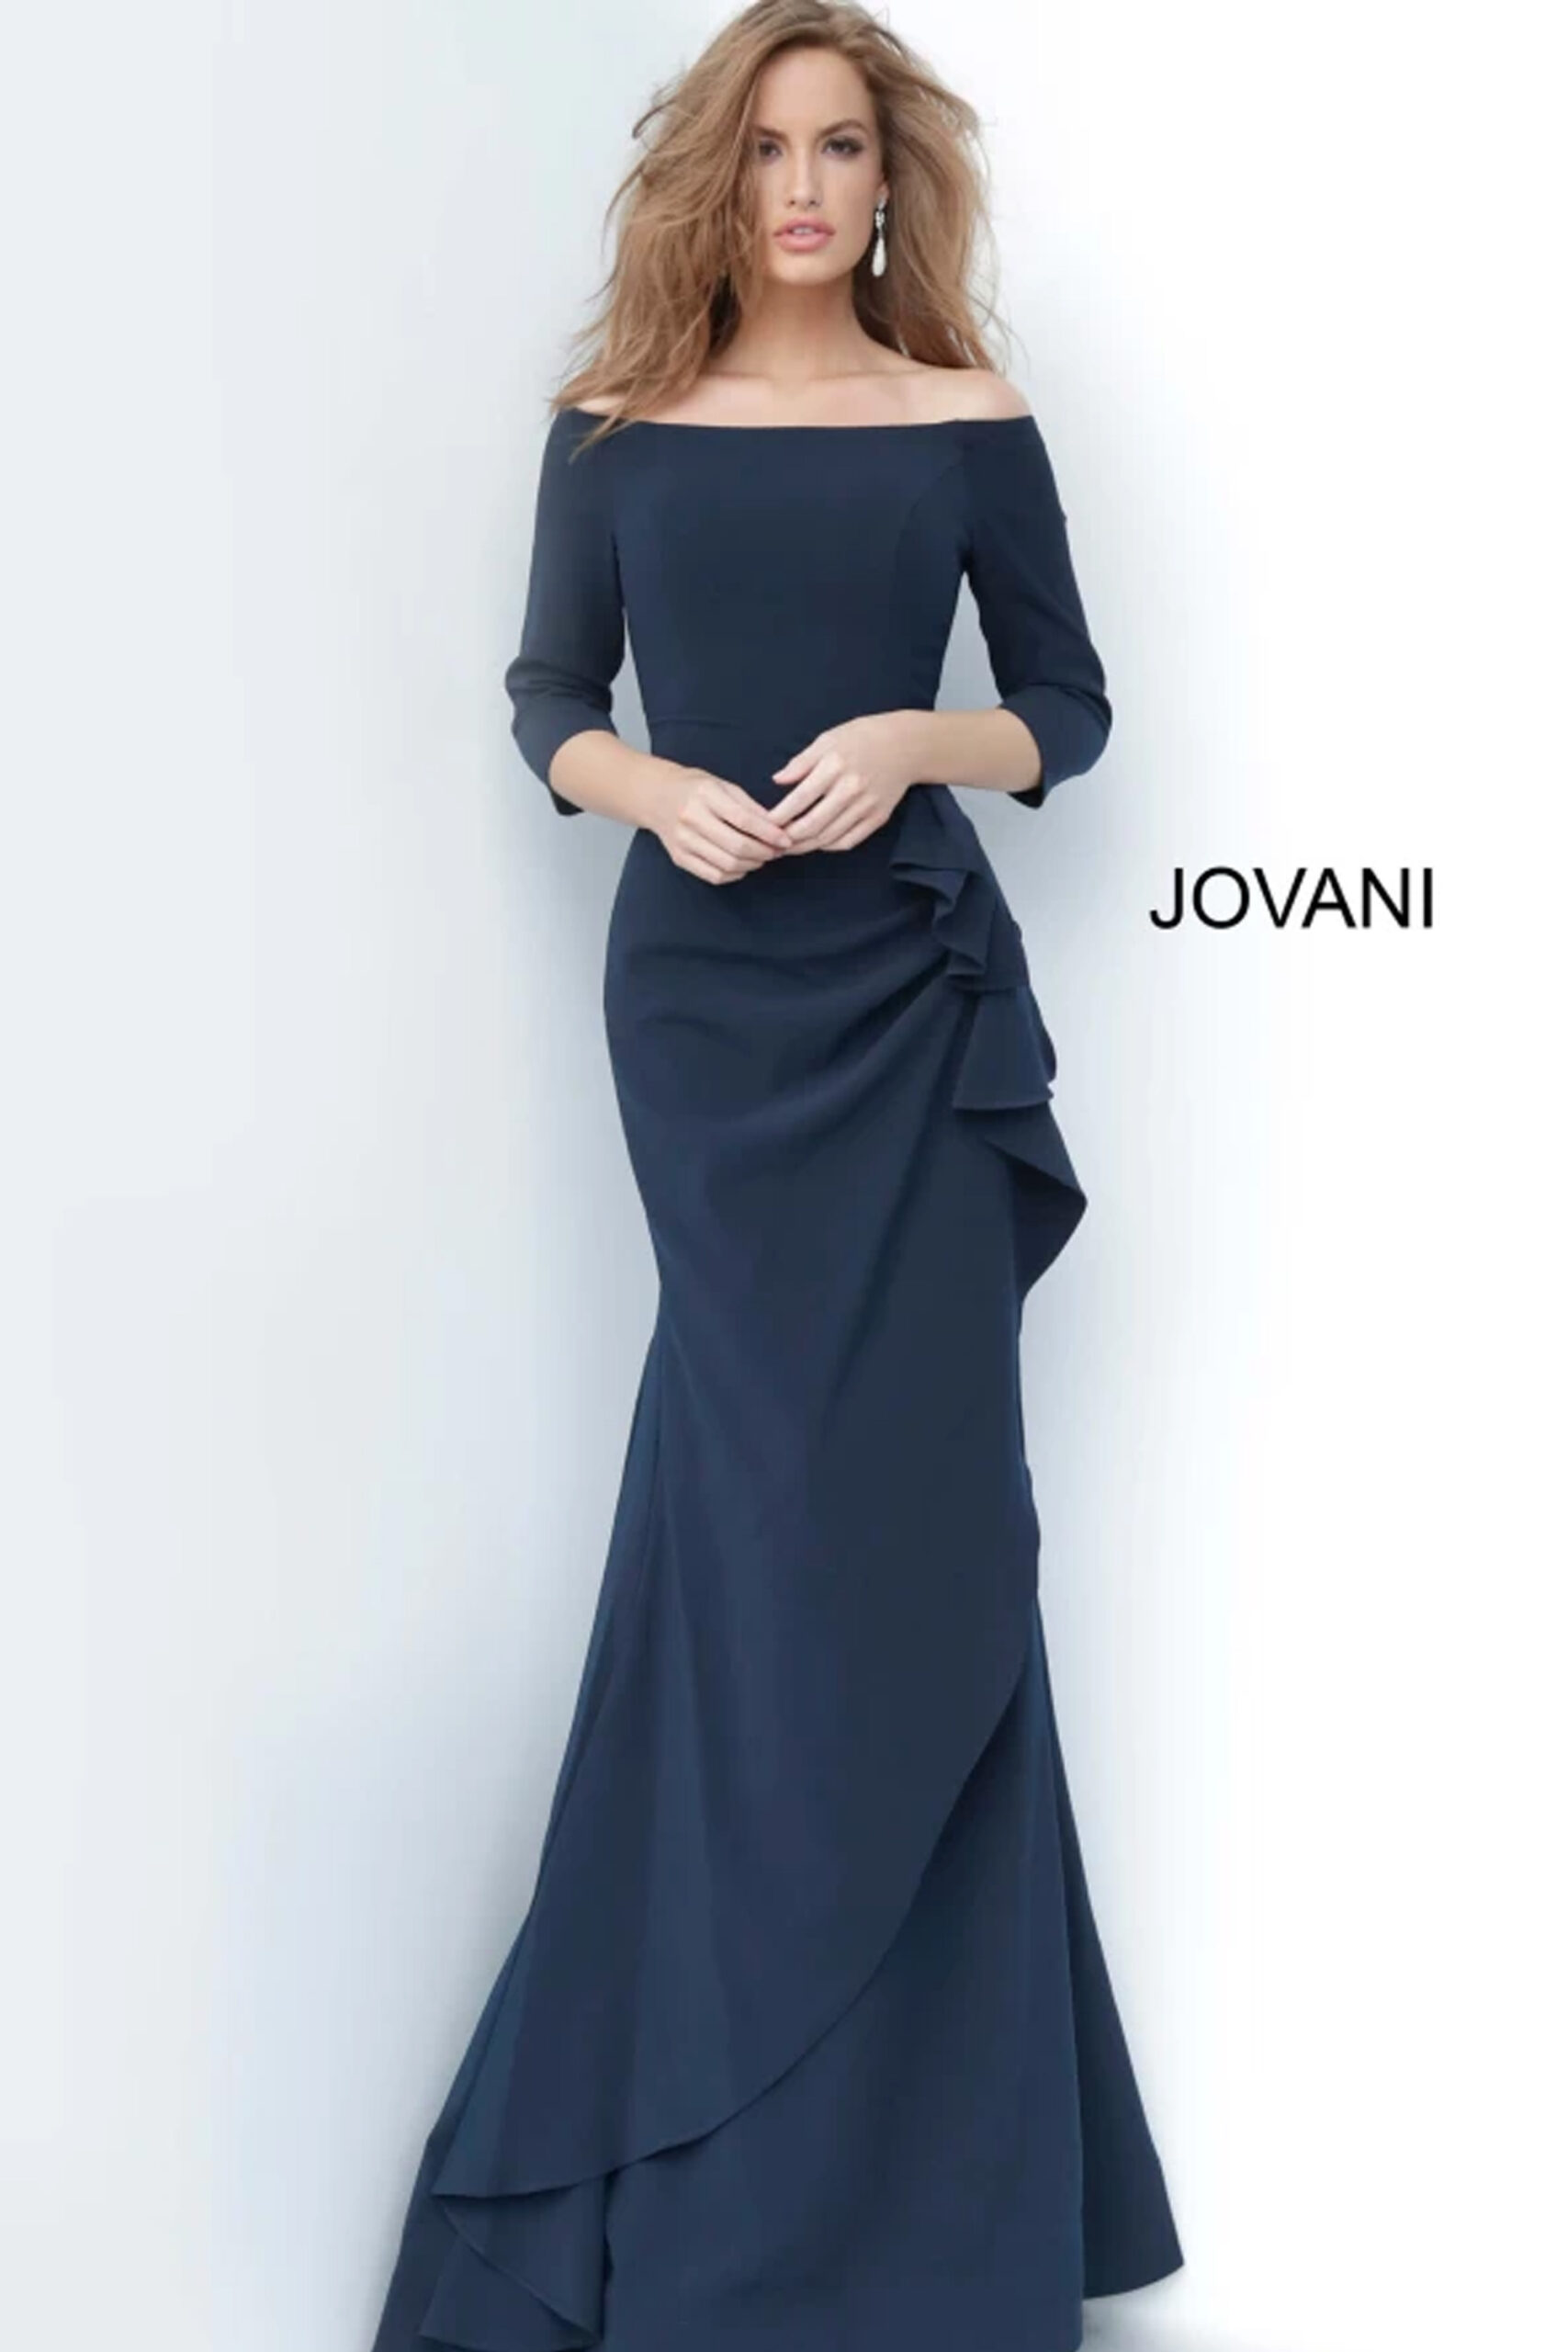 Jovani 00446 Off the Shoulder Ruched Dress